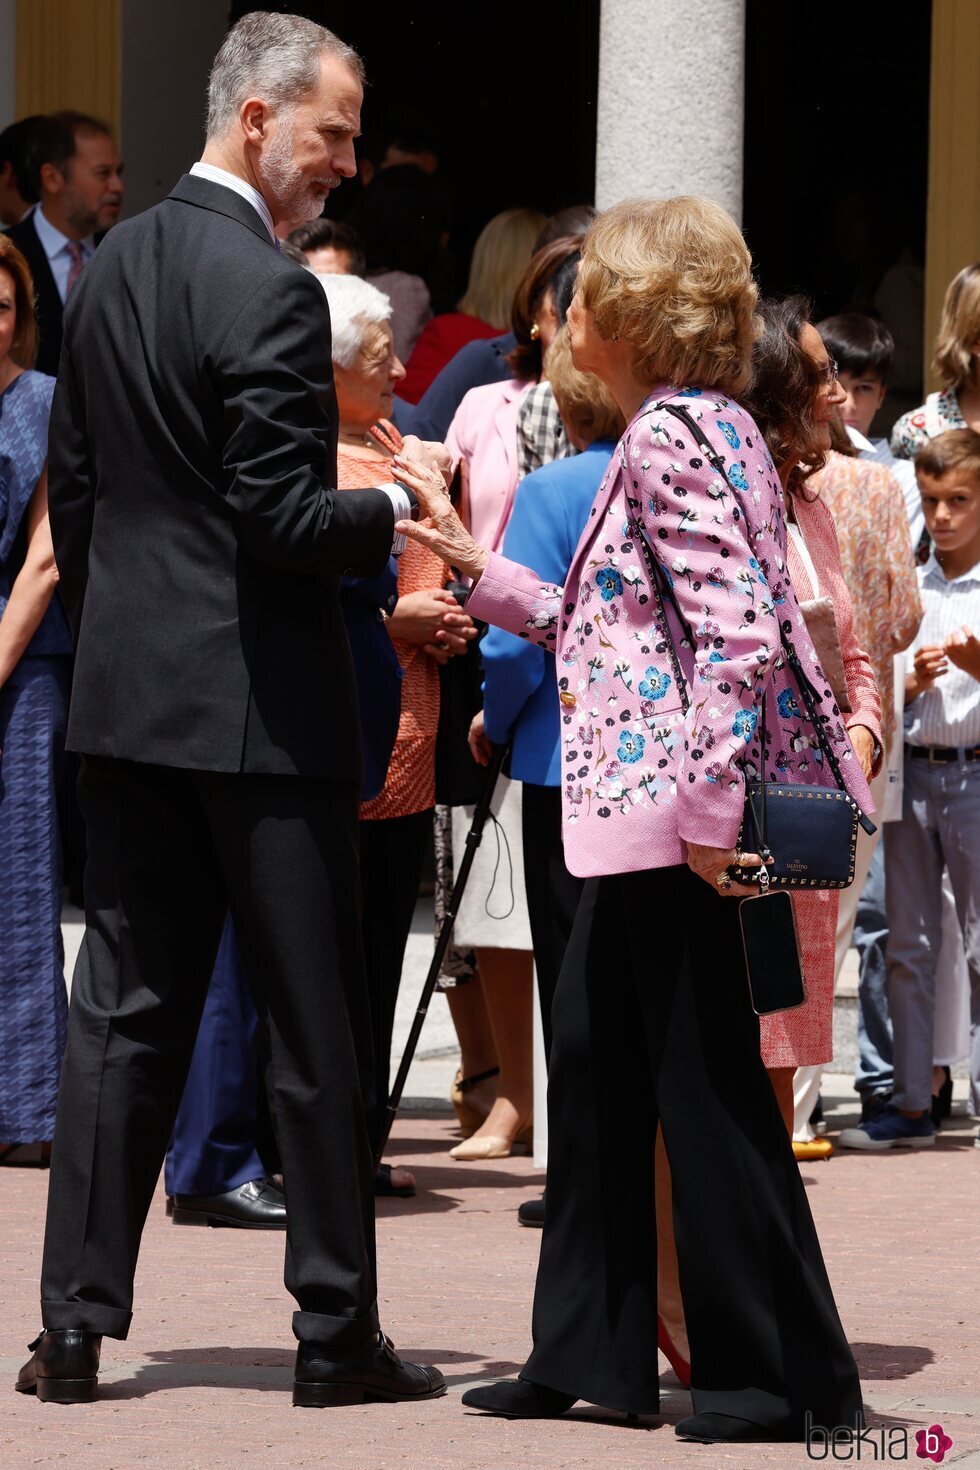 El Rey Felipe VI y la Reina Sofía hablando en la Confirmación de la Infanta Sofía